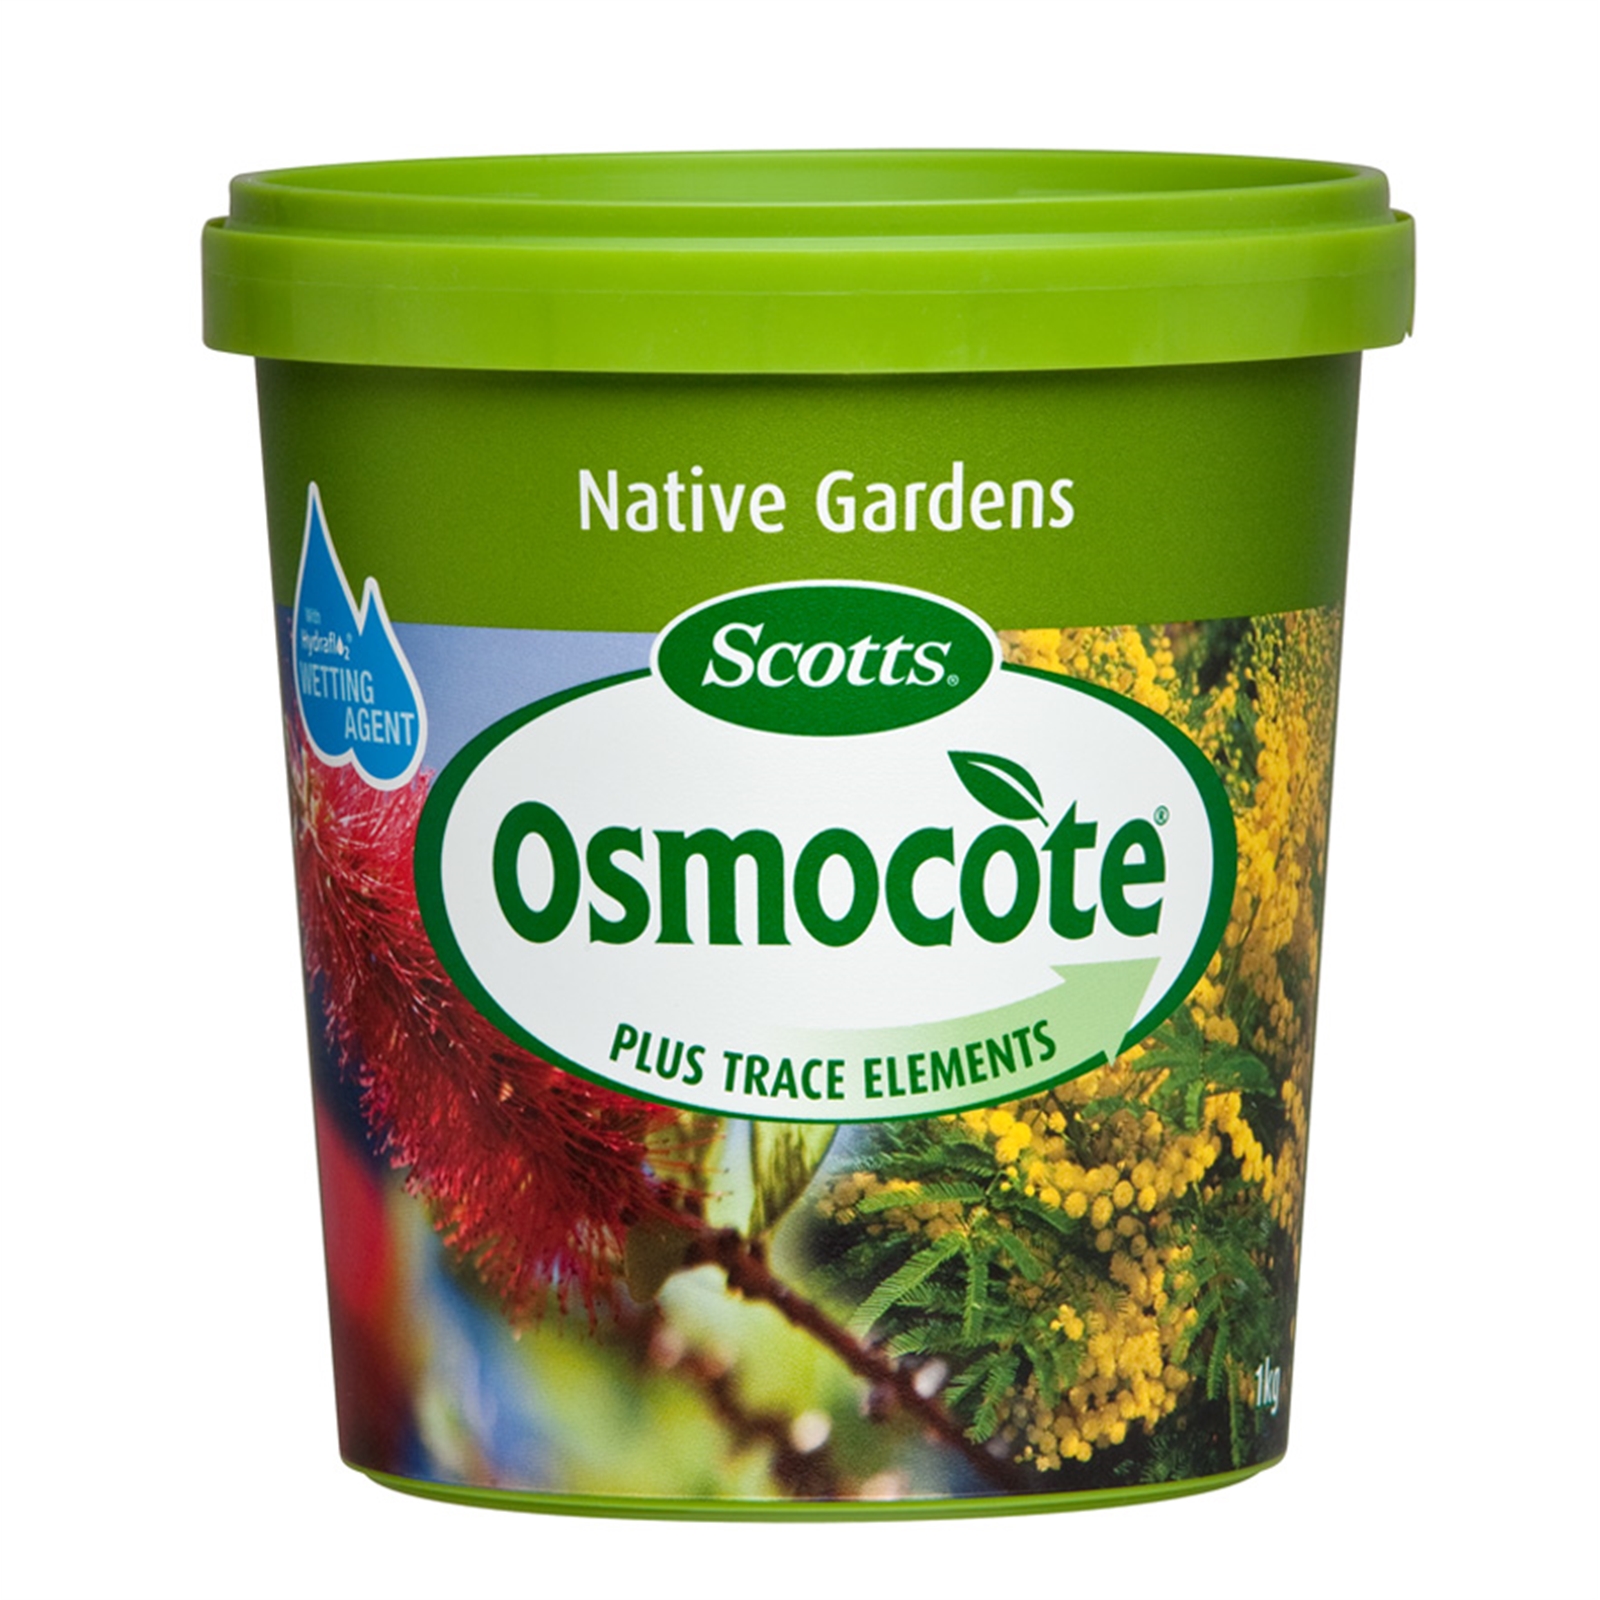 Osmocote 1kg Native Gardens Controlled Release Fertiliser